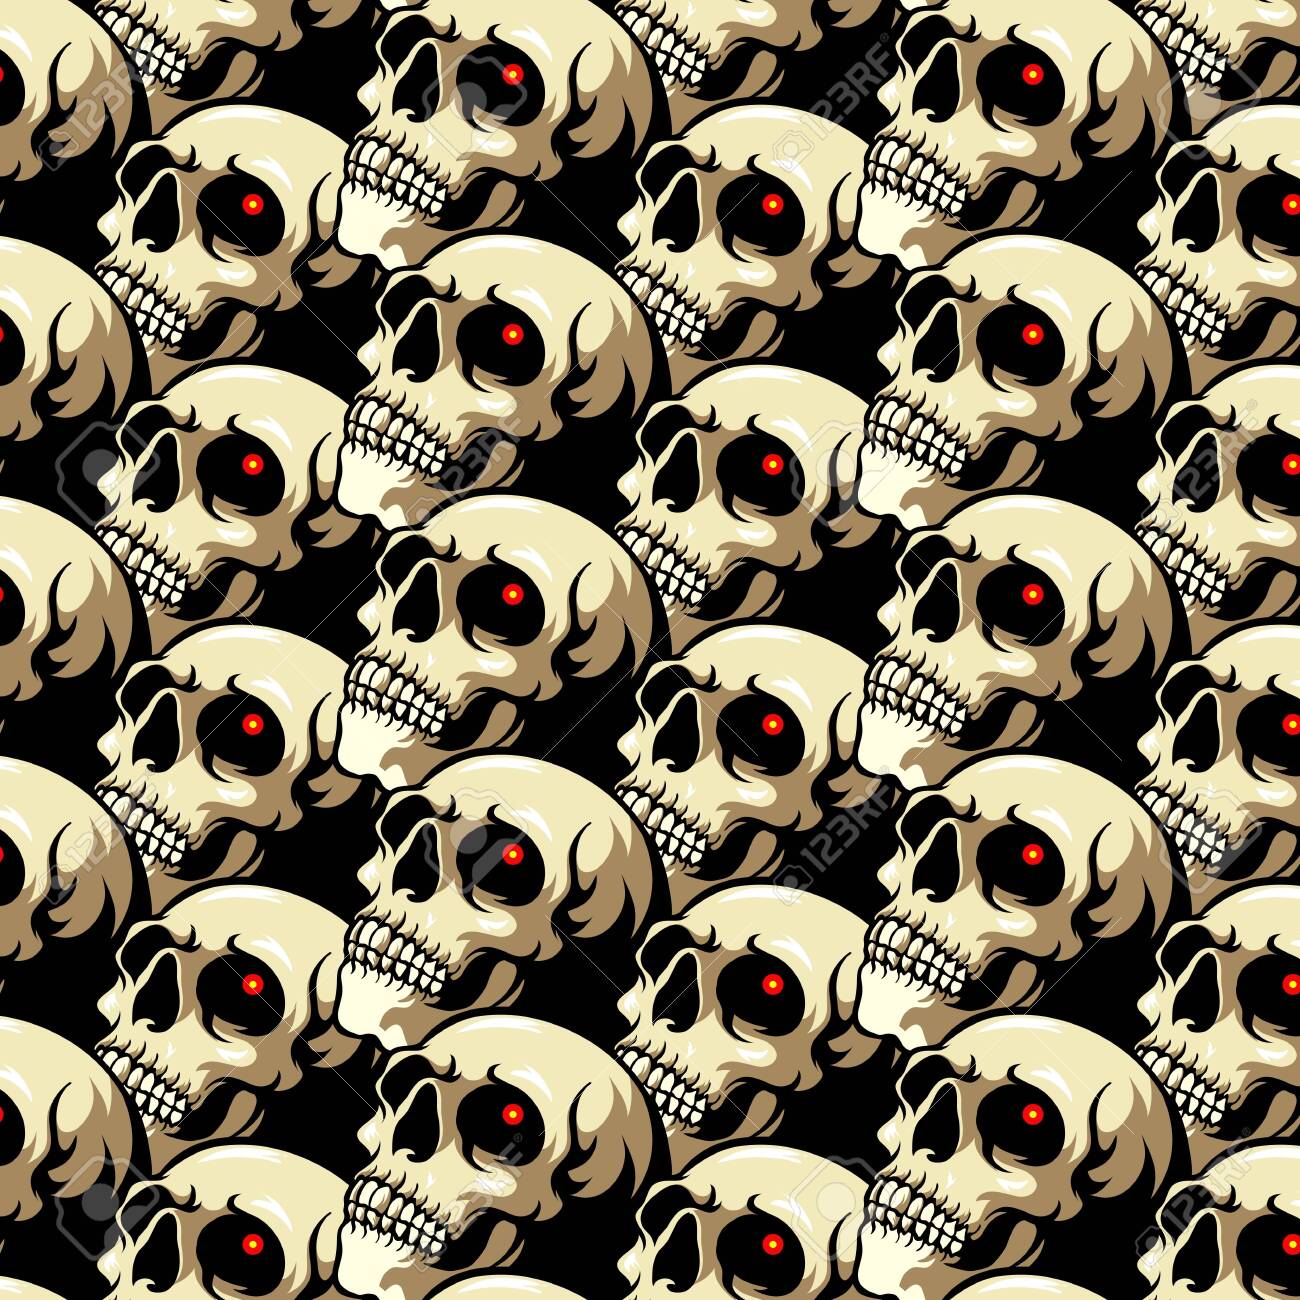 13+] Skull Heads Wallpapers - WallpaperSafari